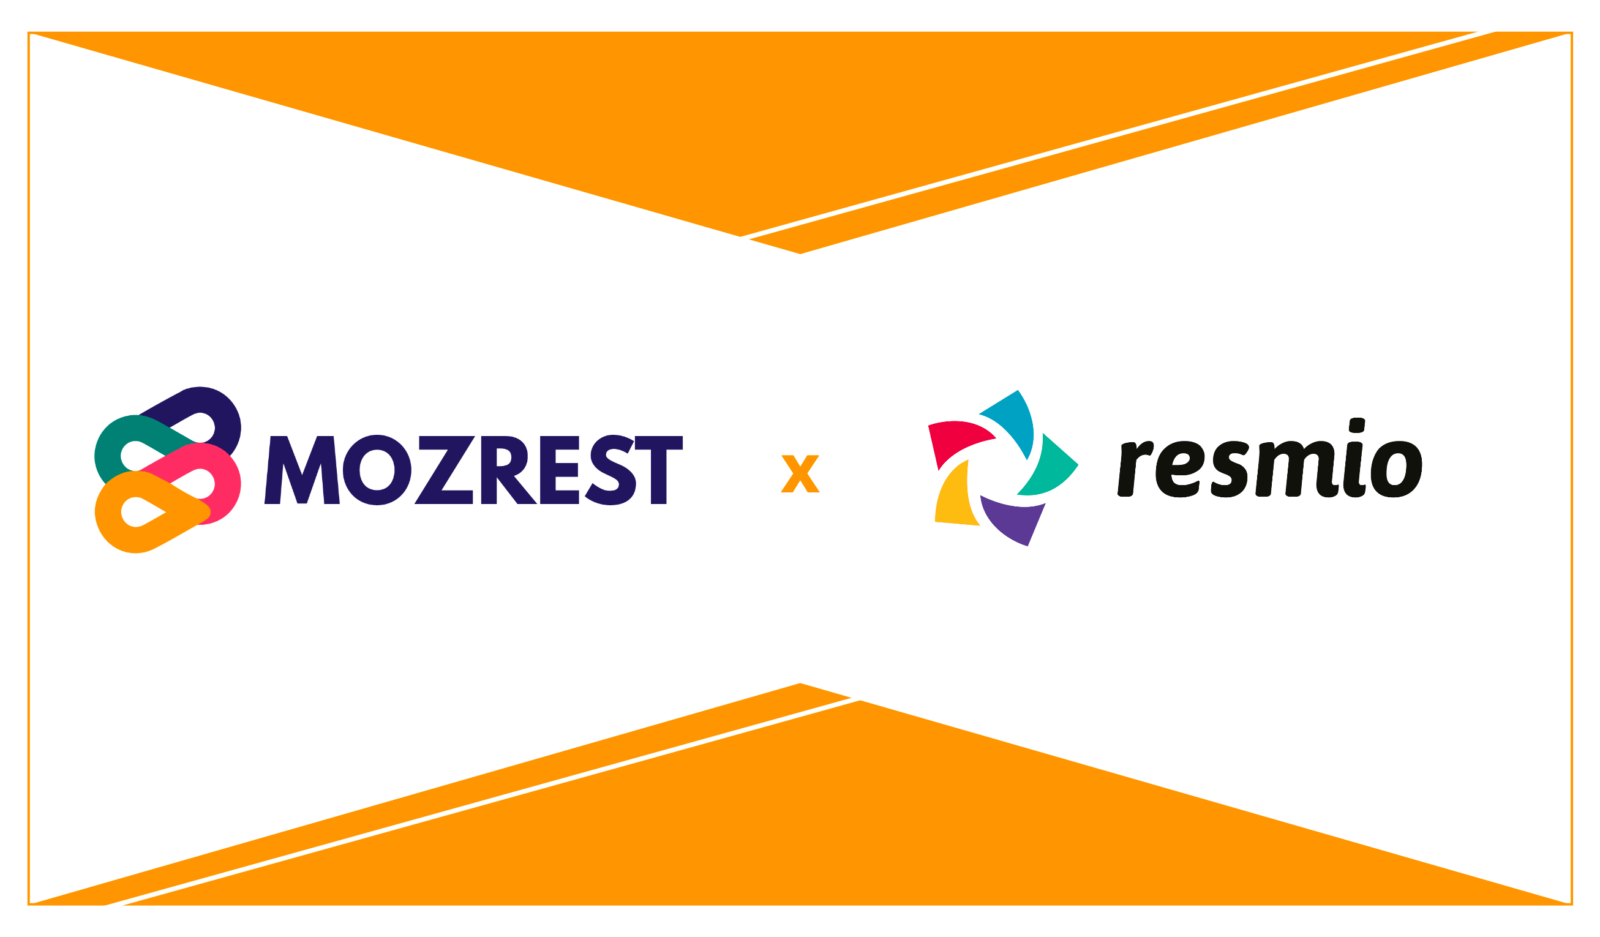 Mozrest - resmio partnership